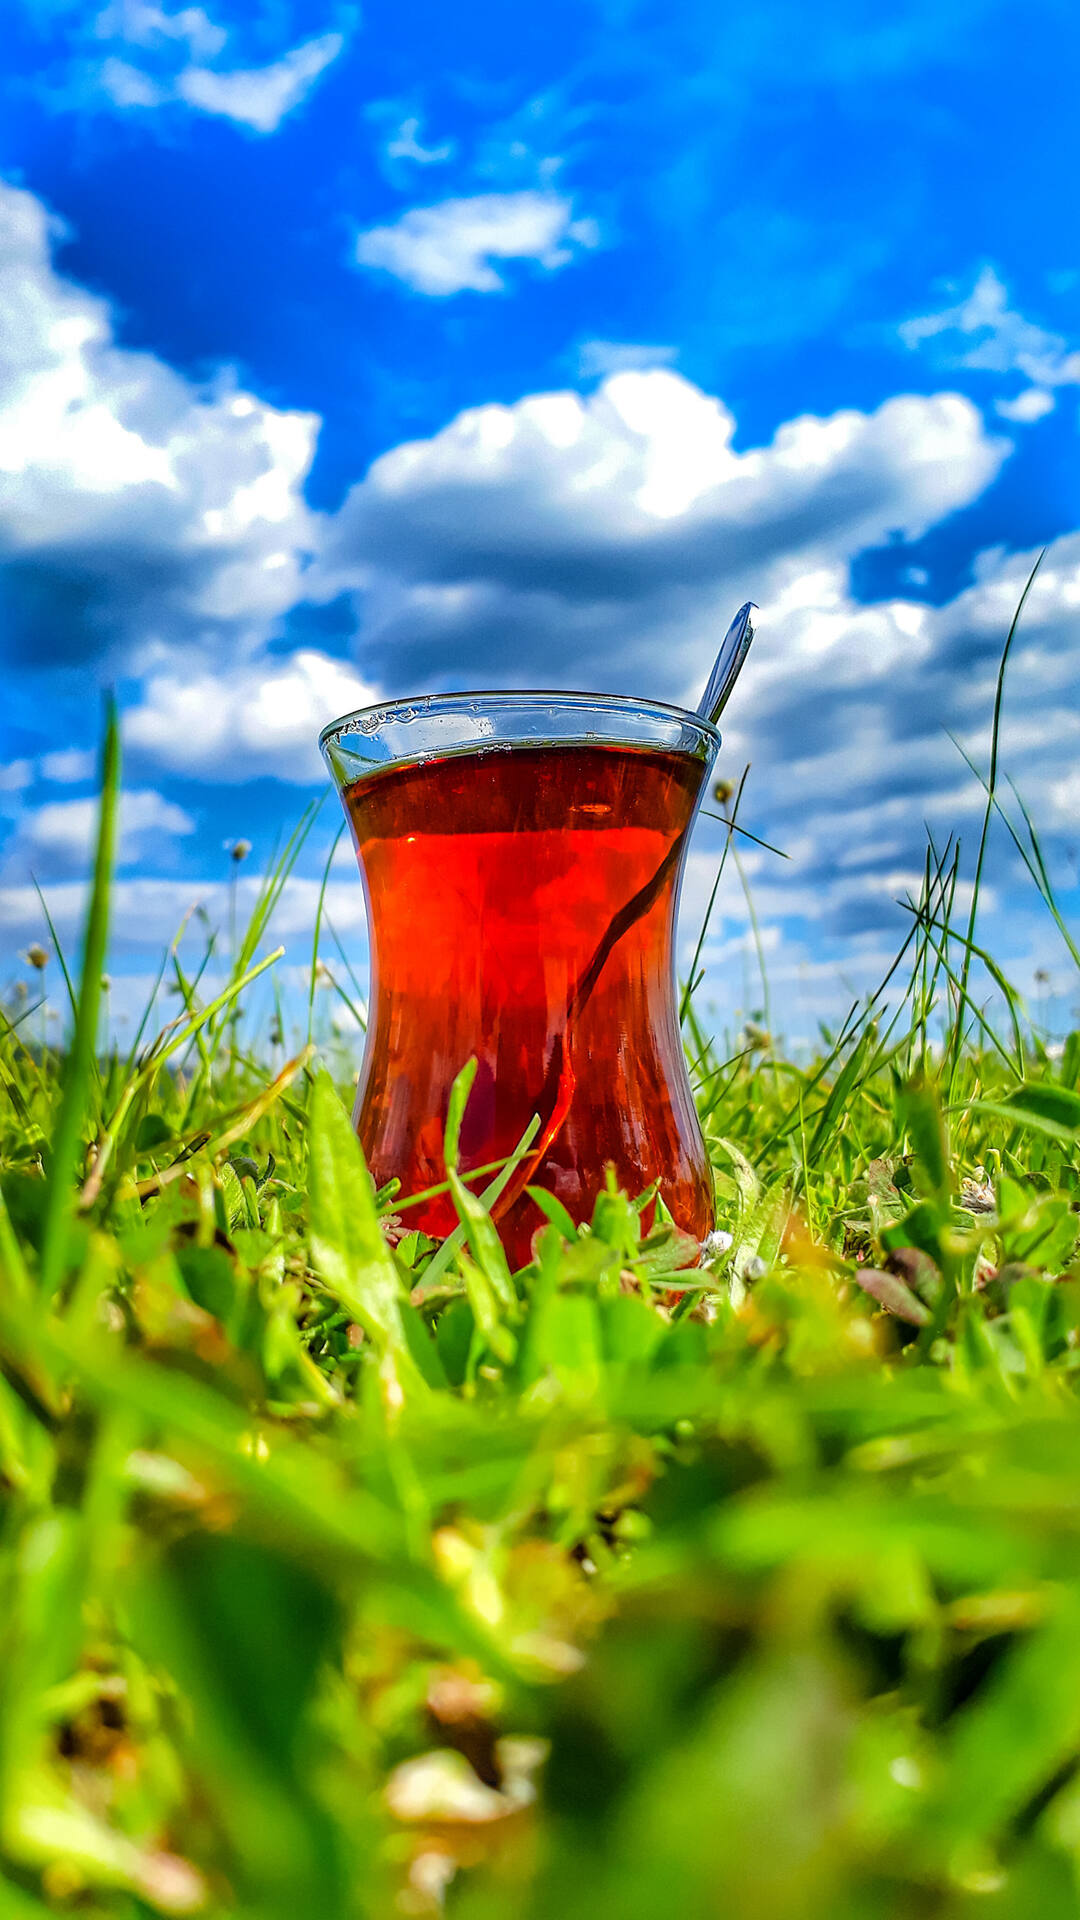 蔚蓝，天空，白云朵朵，绿草地上，玻璃杯里的红色饮料 唯美户外风景手机壁纸